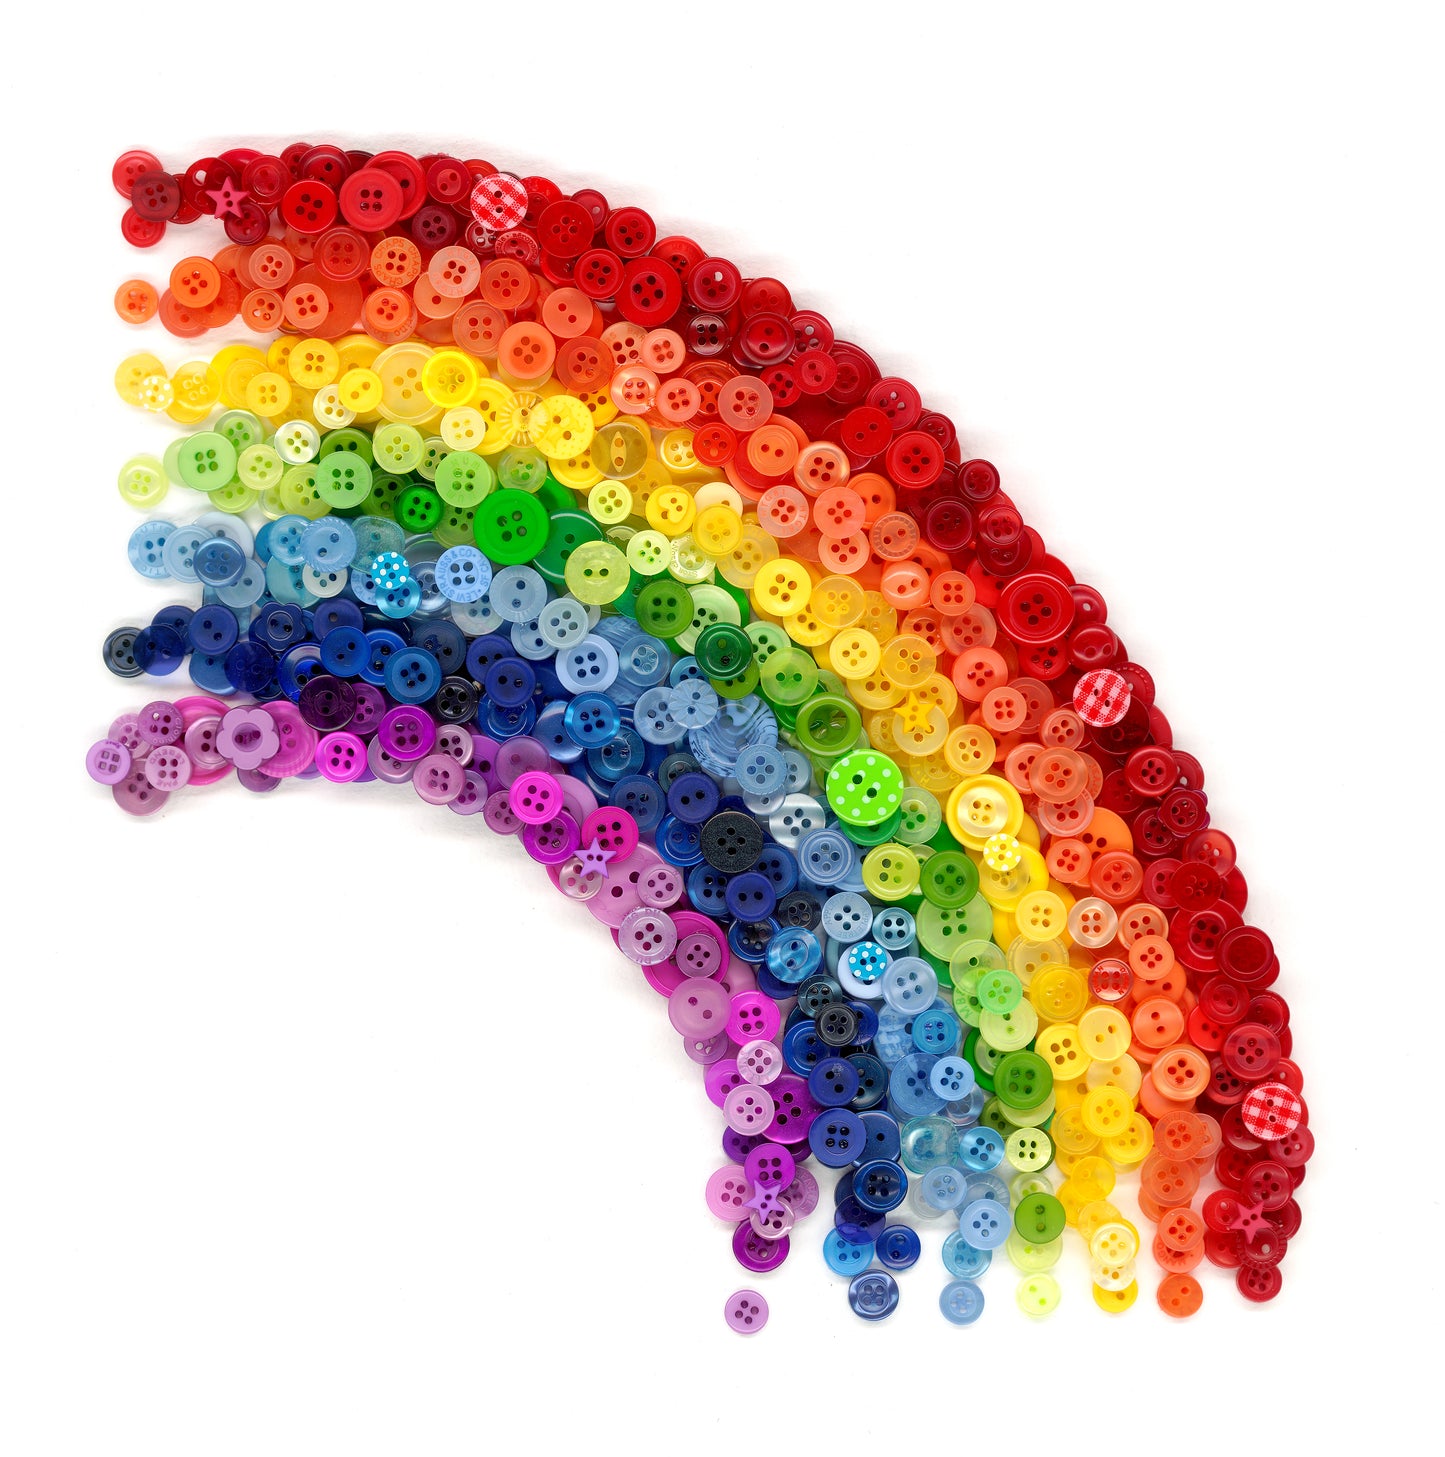 rainbow-gift-idea